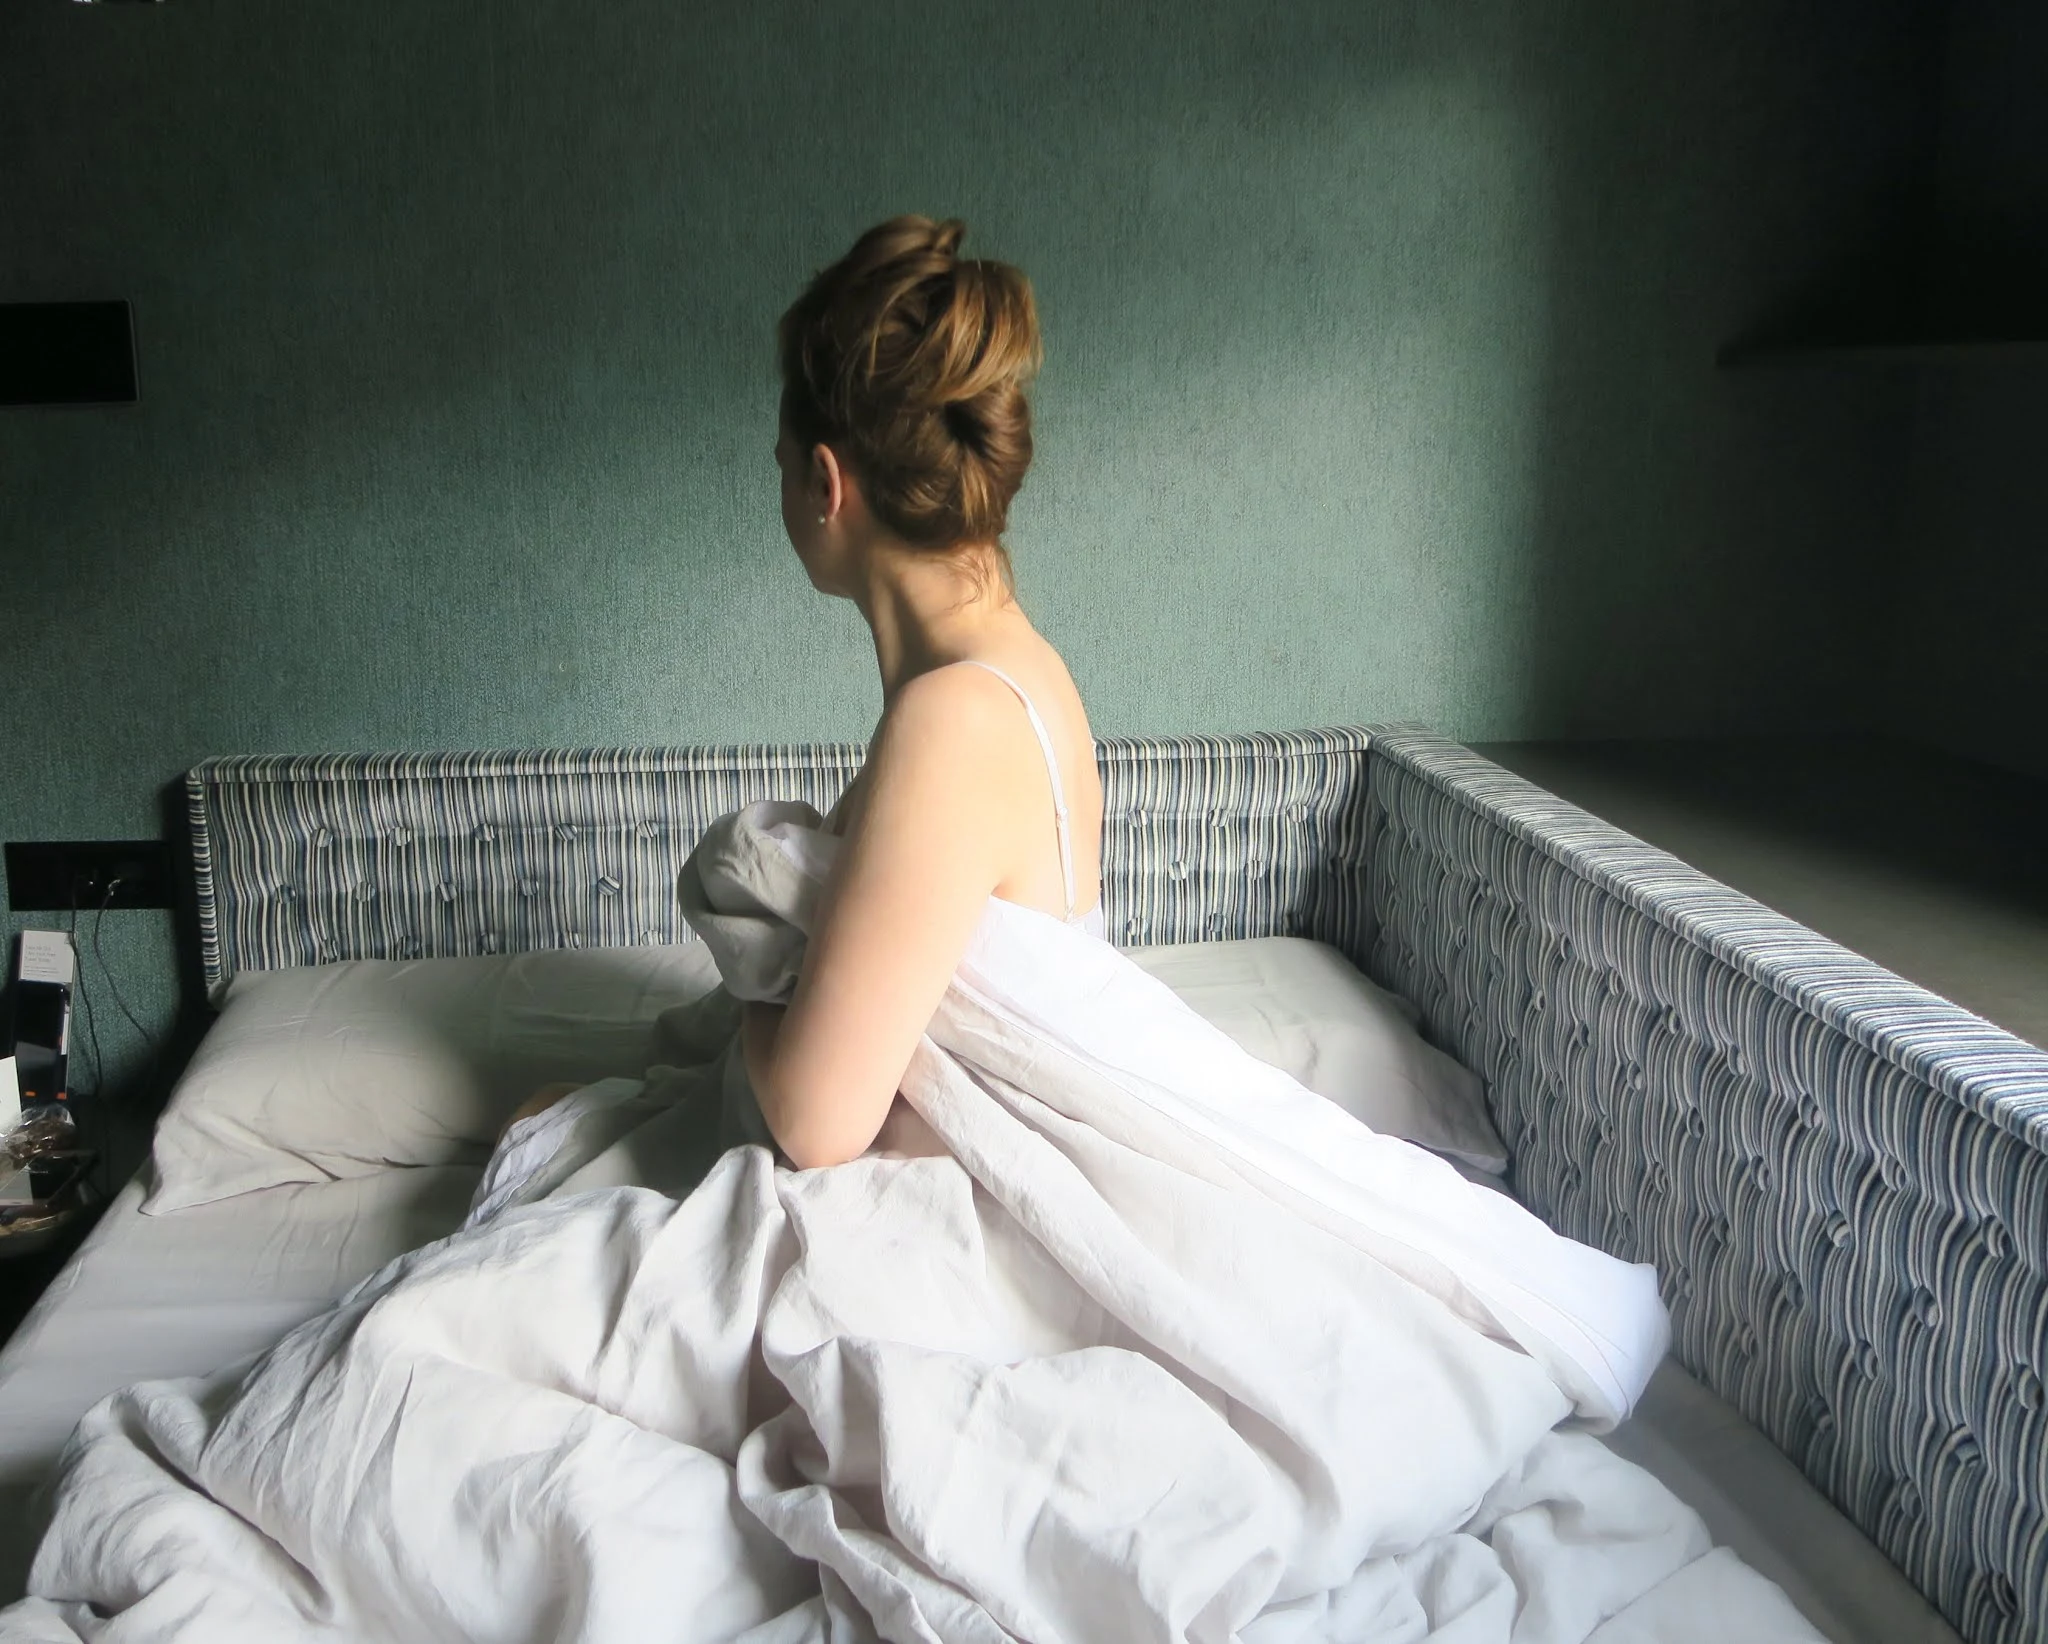 Chanel Sublimage L'Extrait de Nuit - the Sleeping Coach